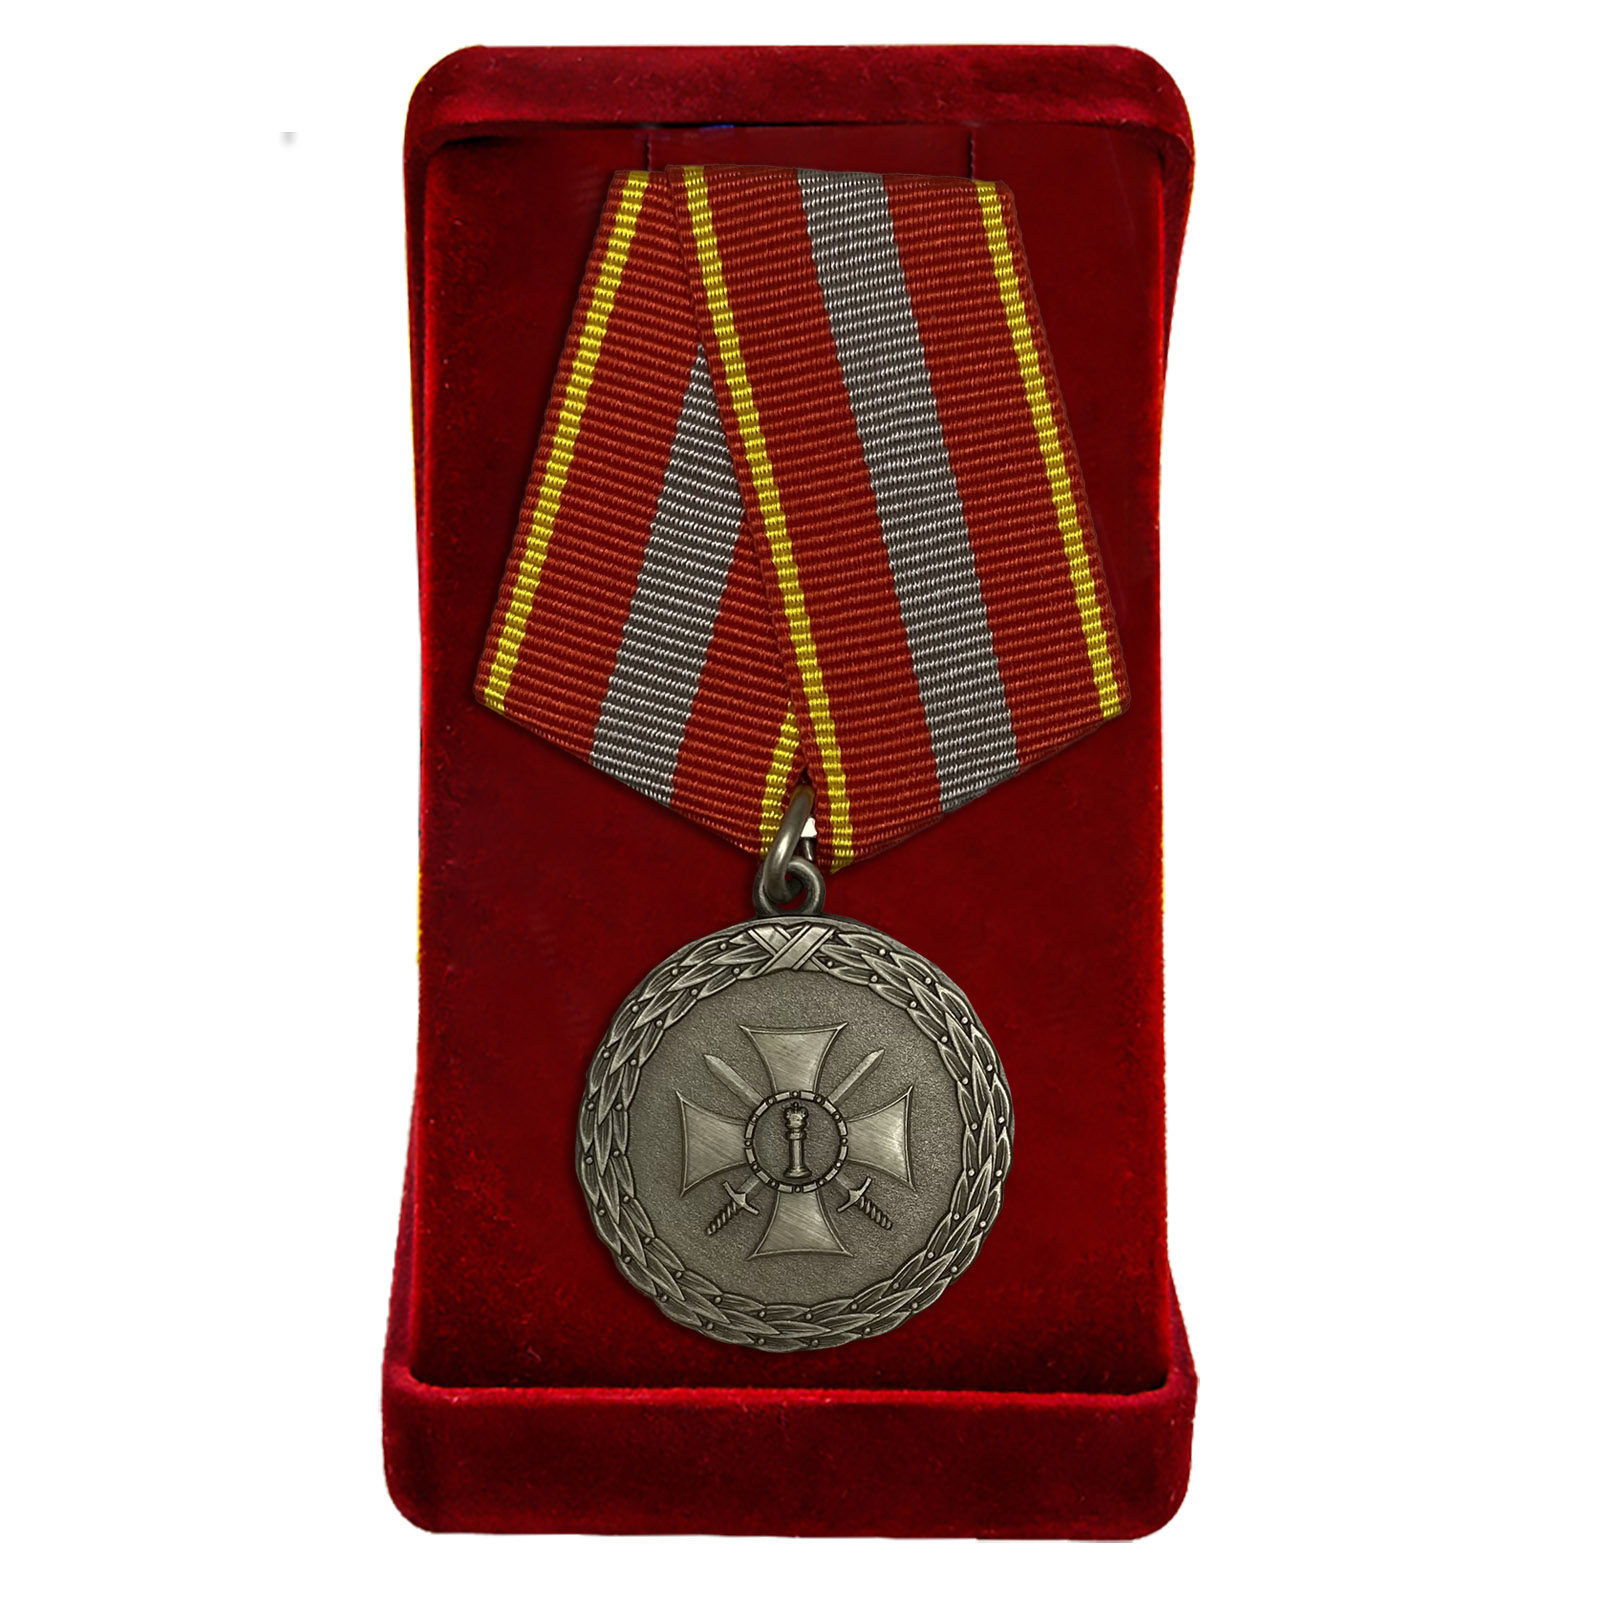 Купить медаль Министерства Юстиции За доблесть 1 степени онлайн выгодно